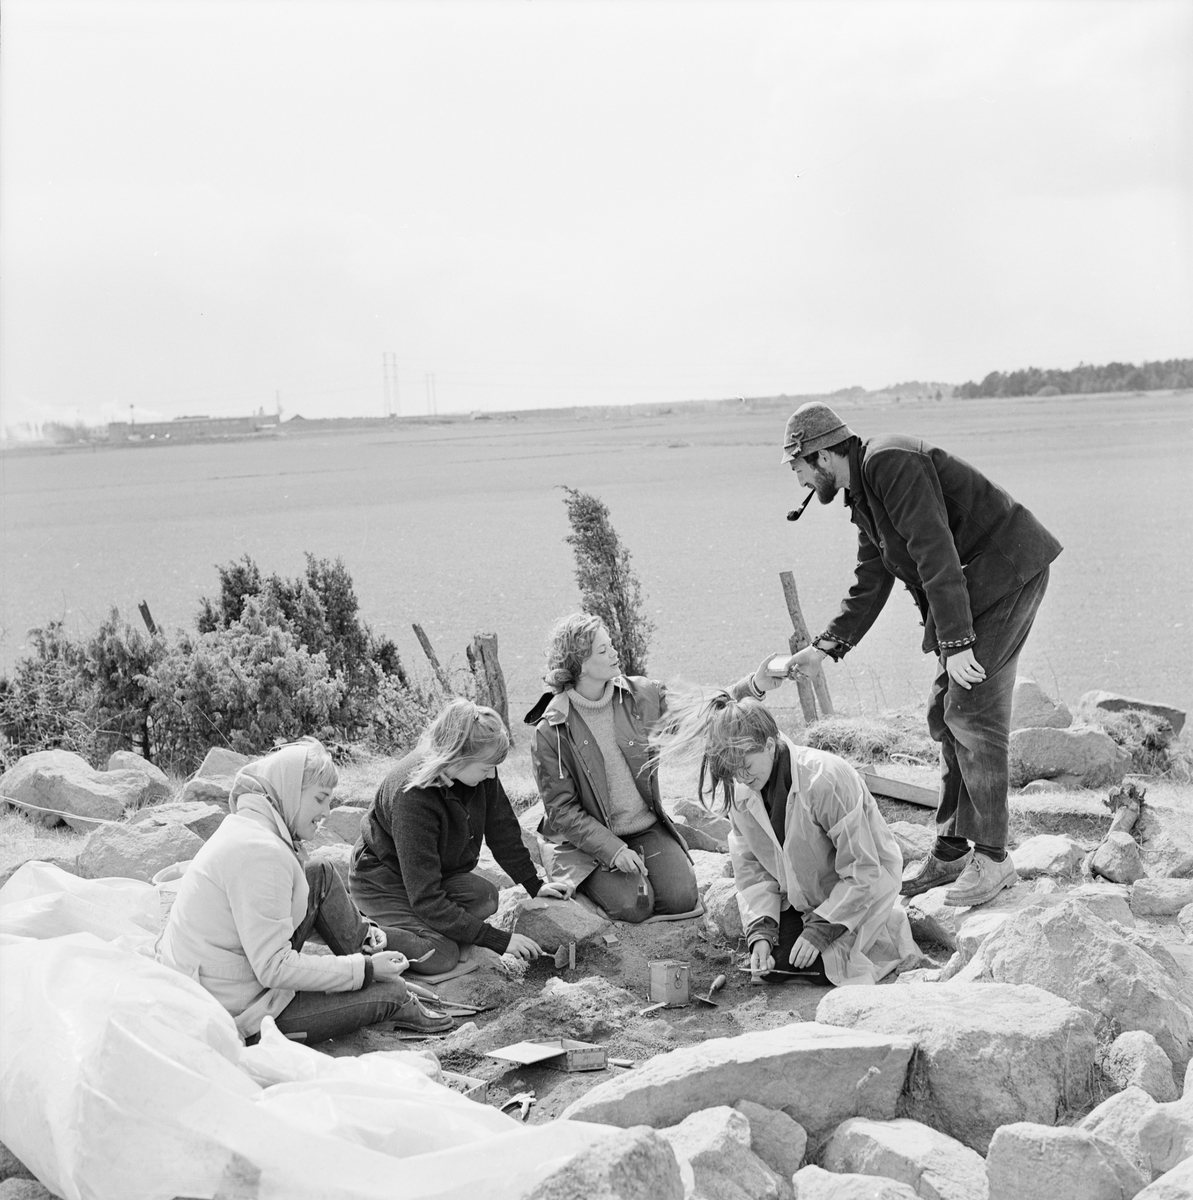 Arkeologisk utgrävning, svärd av järn i vikingagrav, gravfältet Ytterbacken, Vaksala socken, Uppland, maj 1965